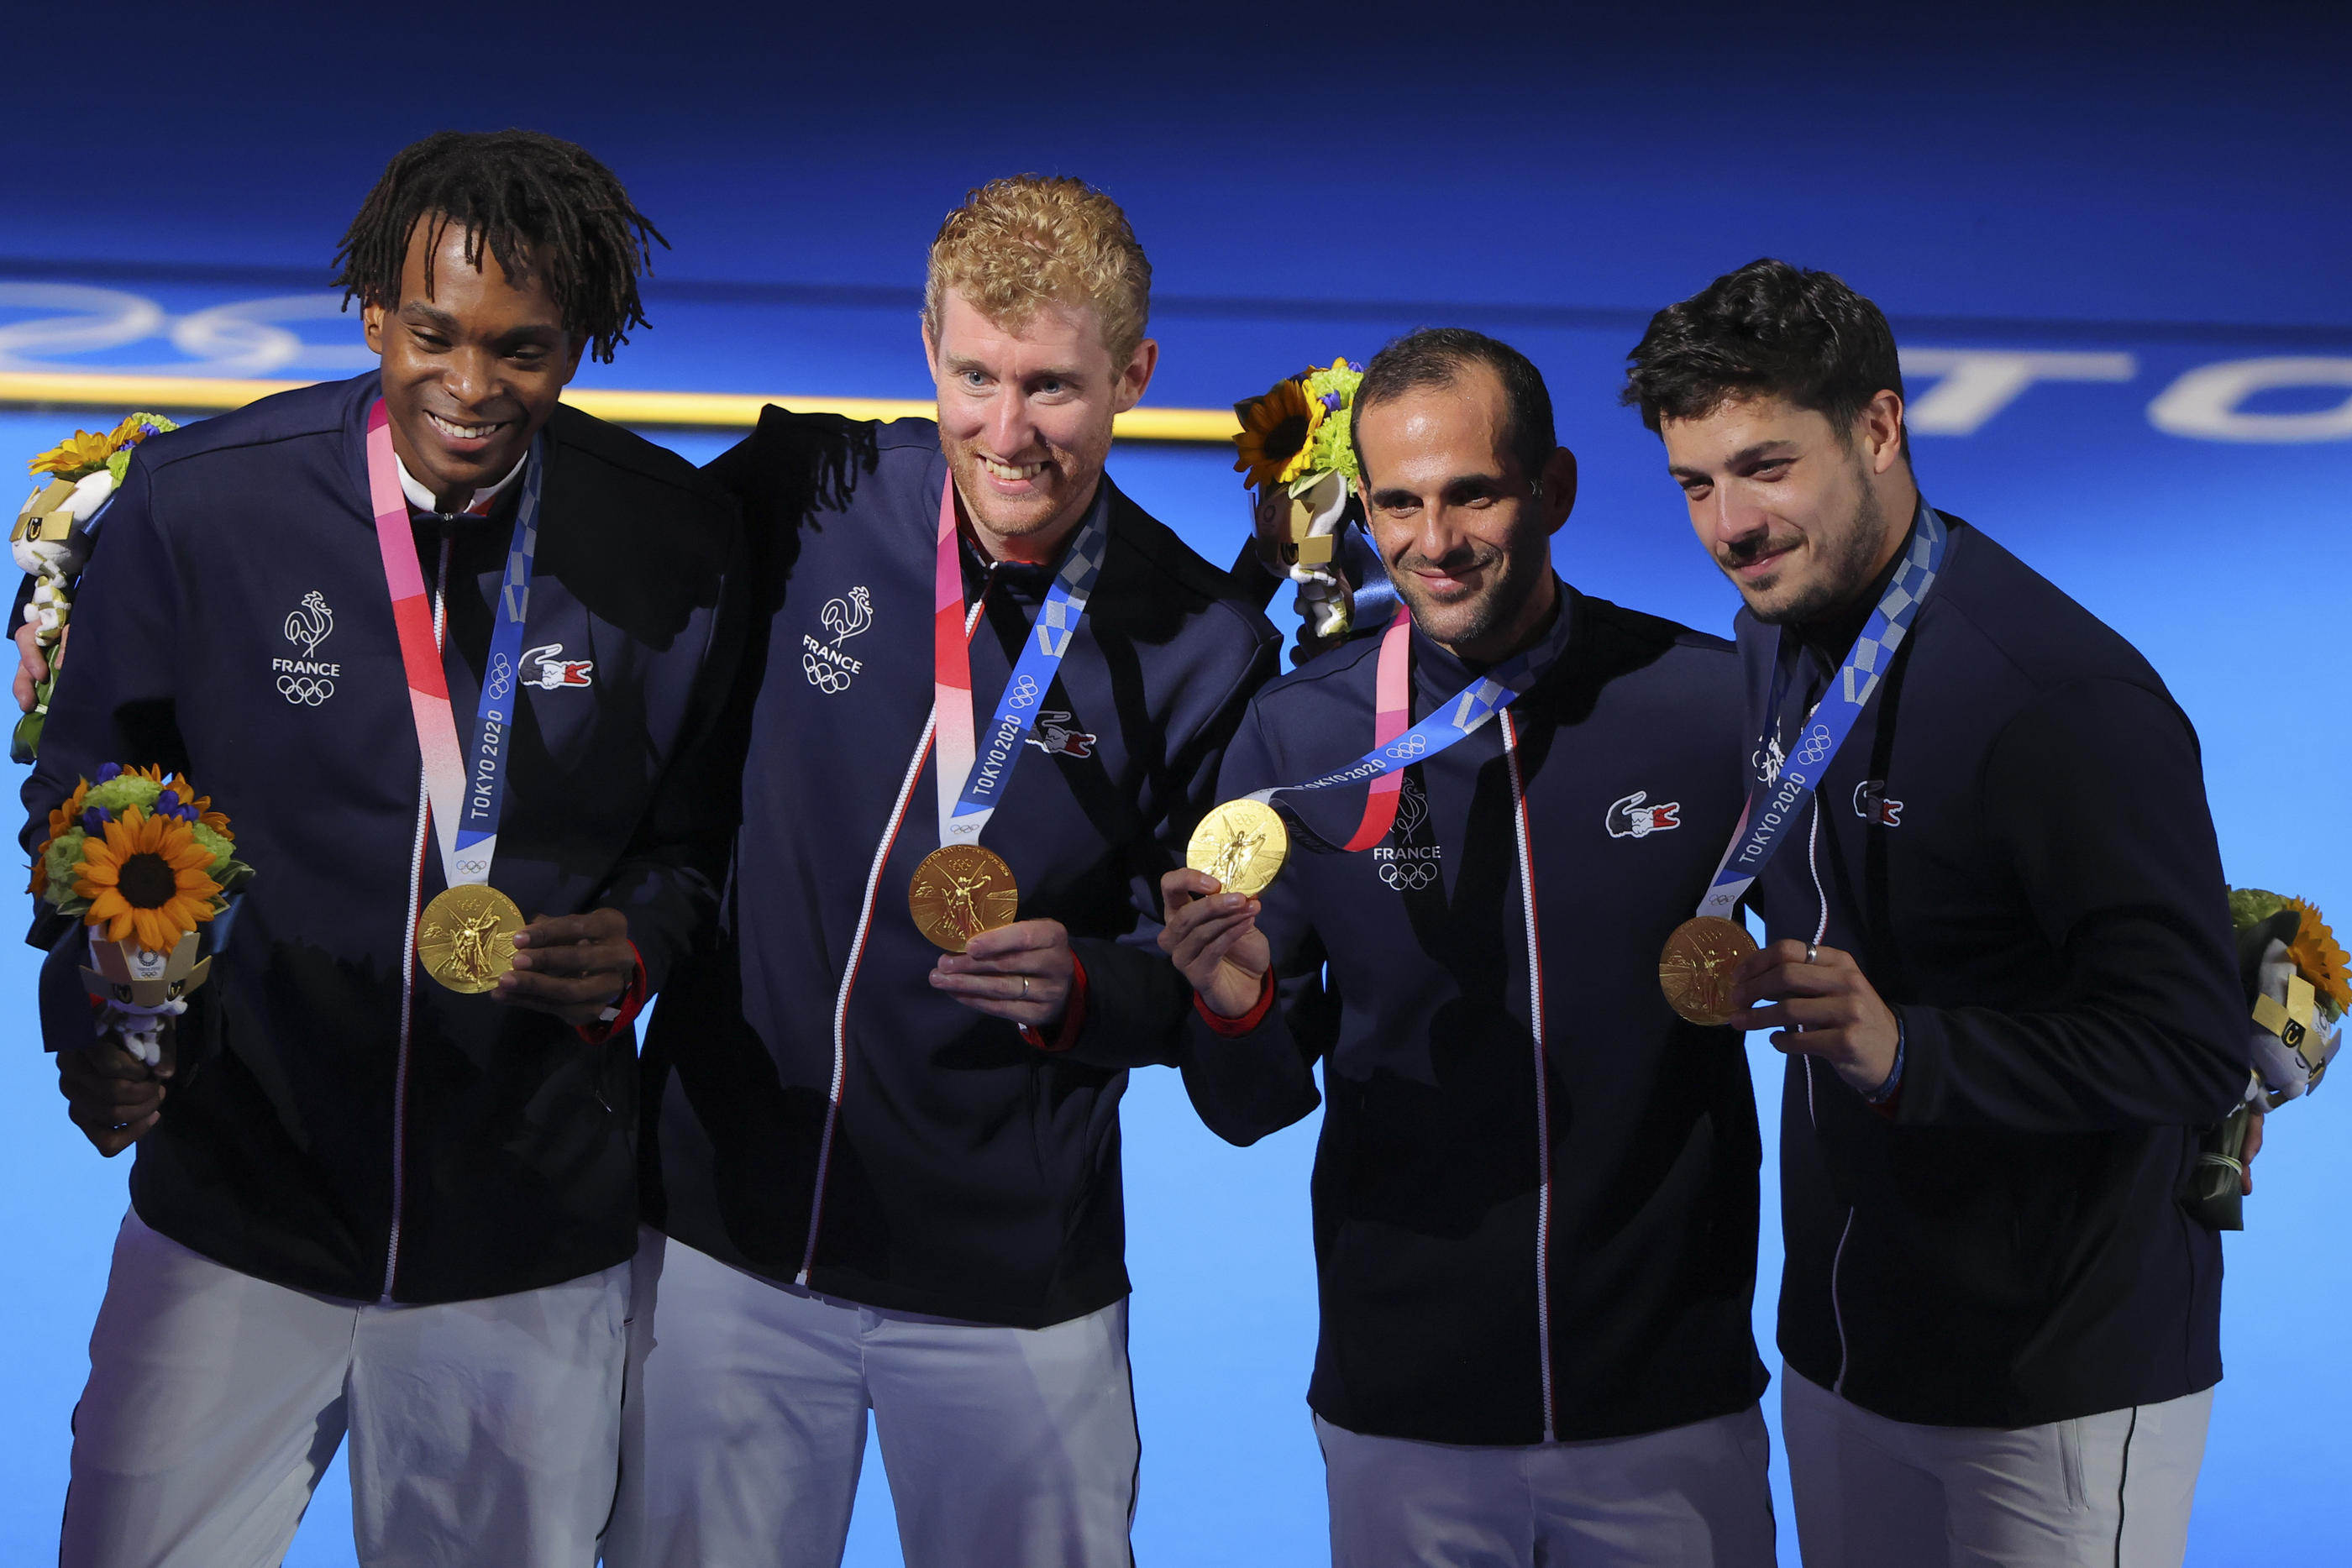 Enzo Lefort, Julien Mertine, Erwann Le Péchoux et Maxime Pauty (de gauche à droite) ont offert à la France une nouvelle médaille d'or. REUTERS/Maxim Shemetov